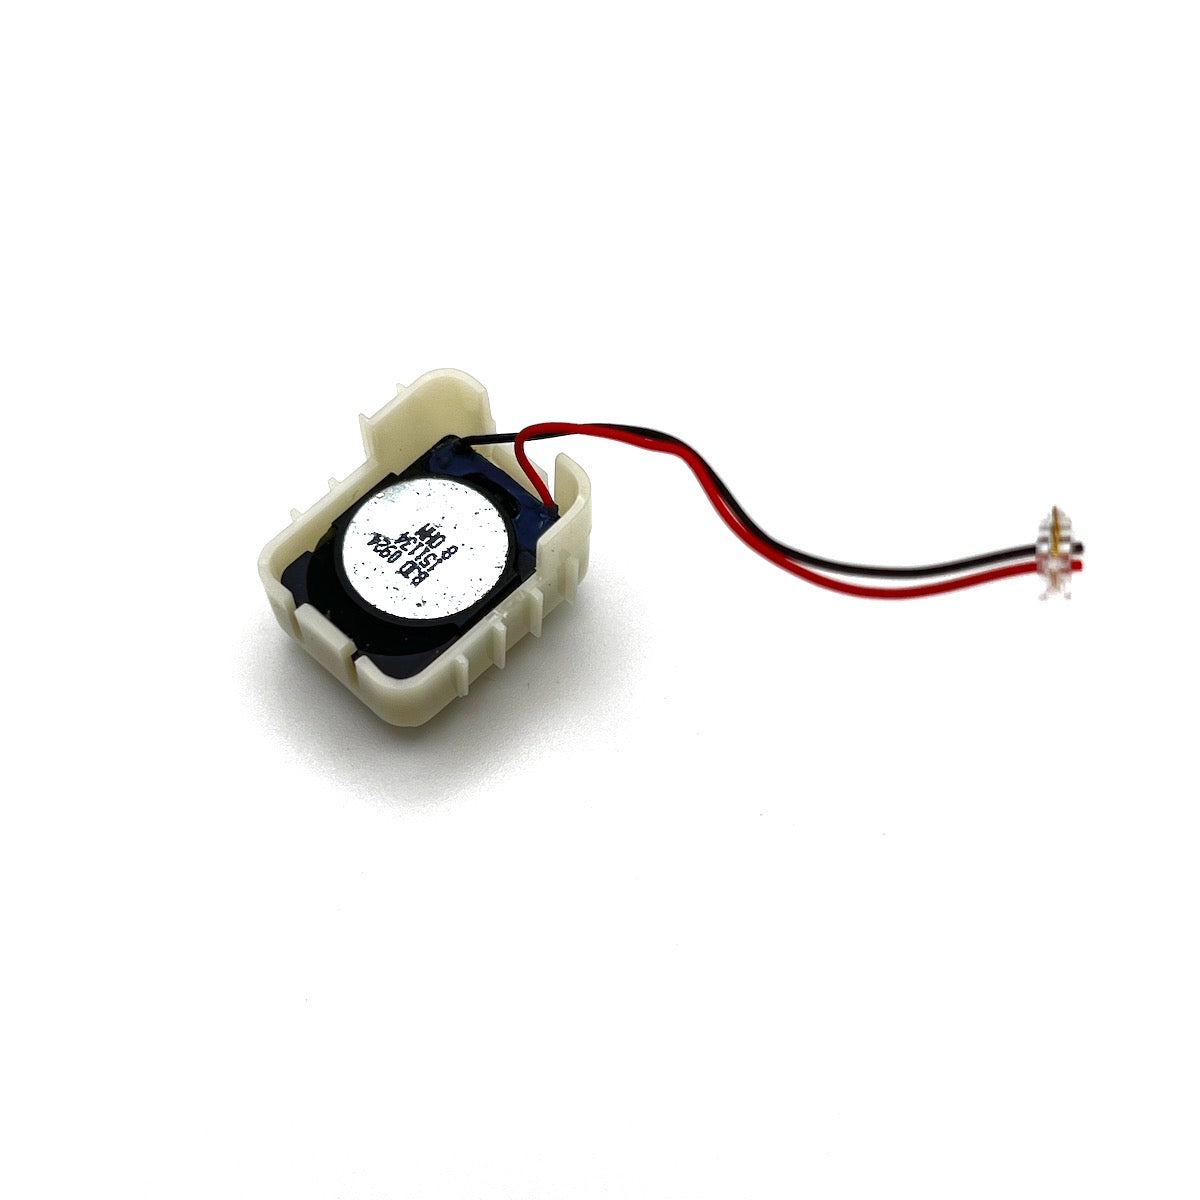 Buzzer Speaker for Iridium 9555   genuine part repair